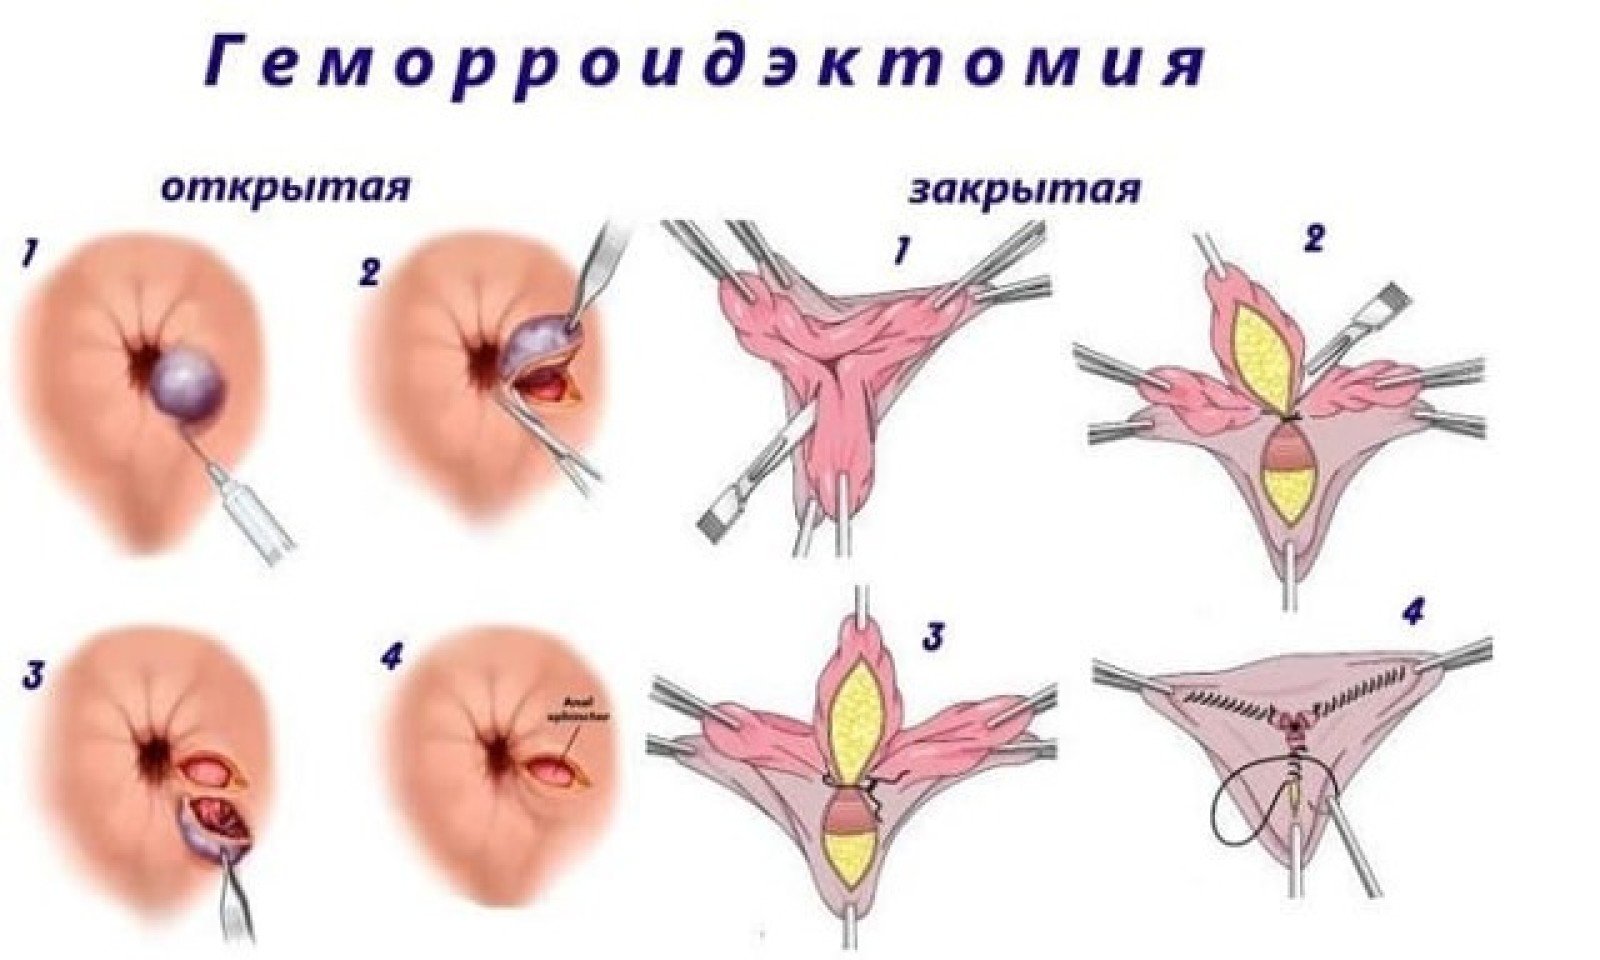 Причиной развития тромбоза геморроидальных узлов считается гиподинамия, а именно - длительное сидение, в результате чего возникают застойные явления в сосудах малого таза